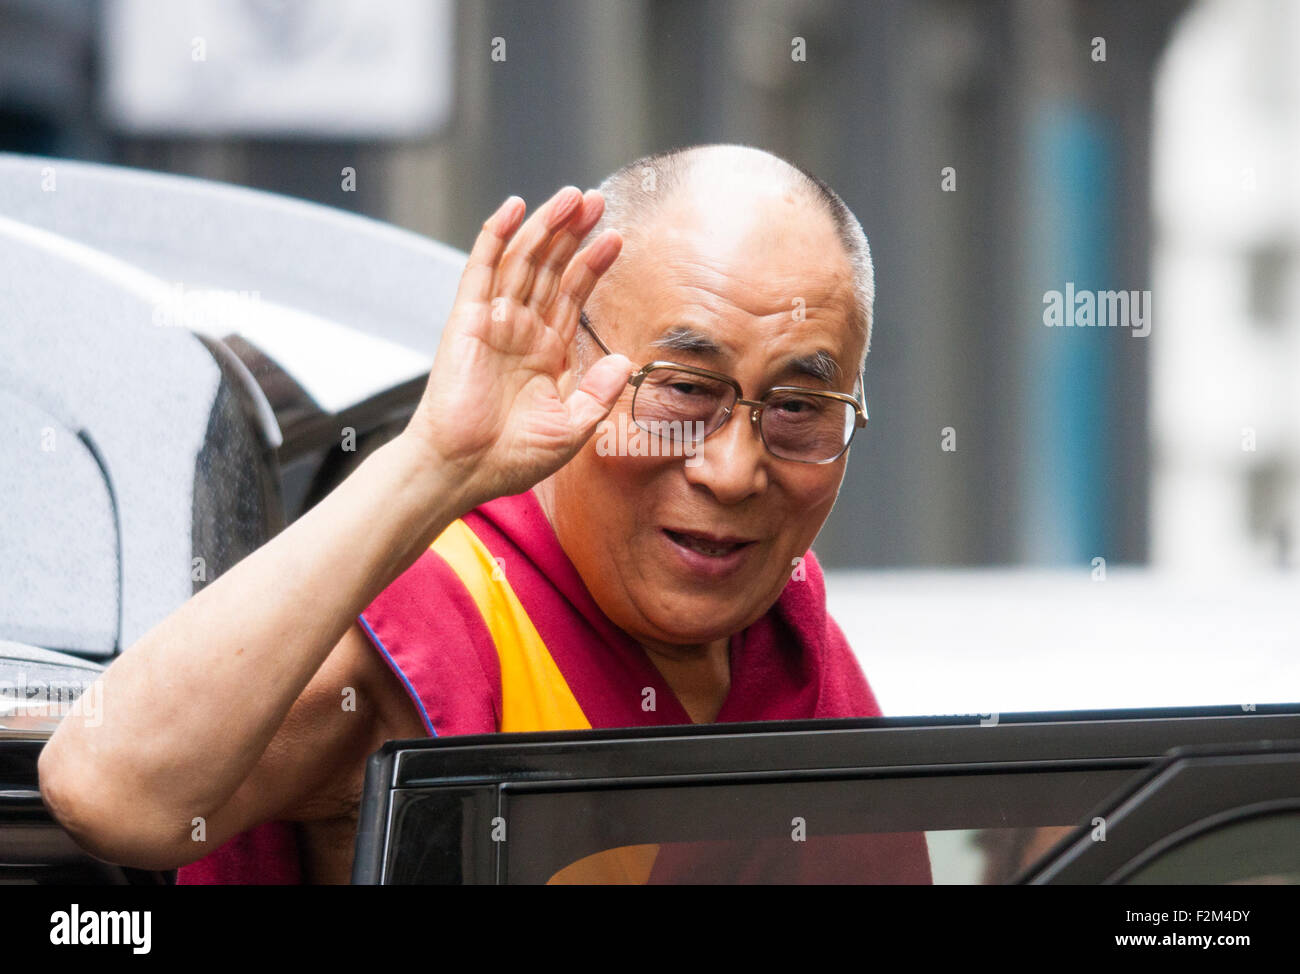 Londra, Regno Unito. Settembre 21st, 2015. Il Dalai Lama e chi è in visita in Gran Bretagna, arriva in mezzo anti-discriminazione proteste da Shugden buddisti, al Lyceum Theatre di Covent Garden per host 'un pomeriggio con il Dalai Lama e gli amici". Foto Stock